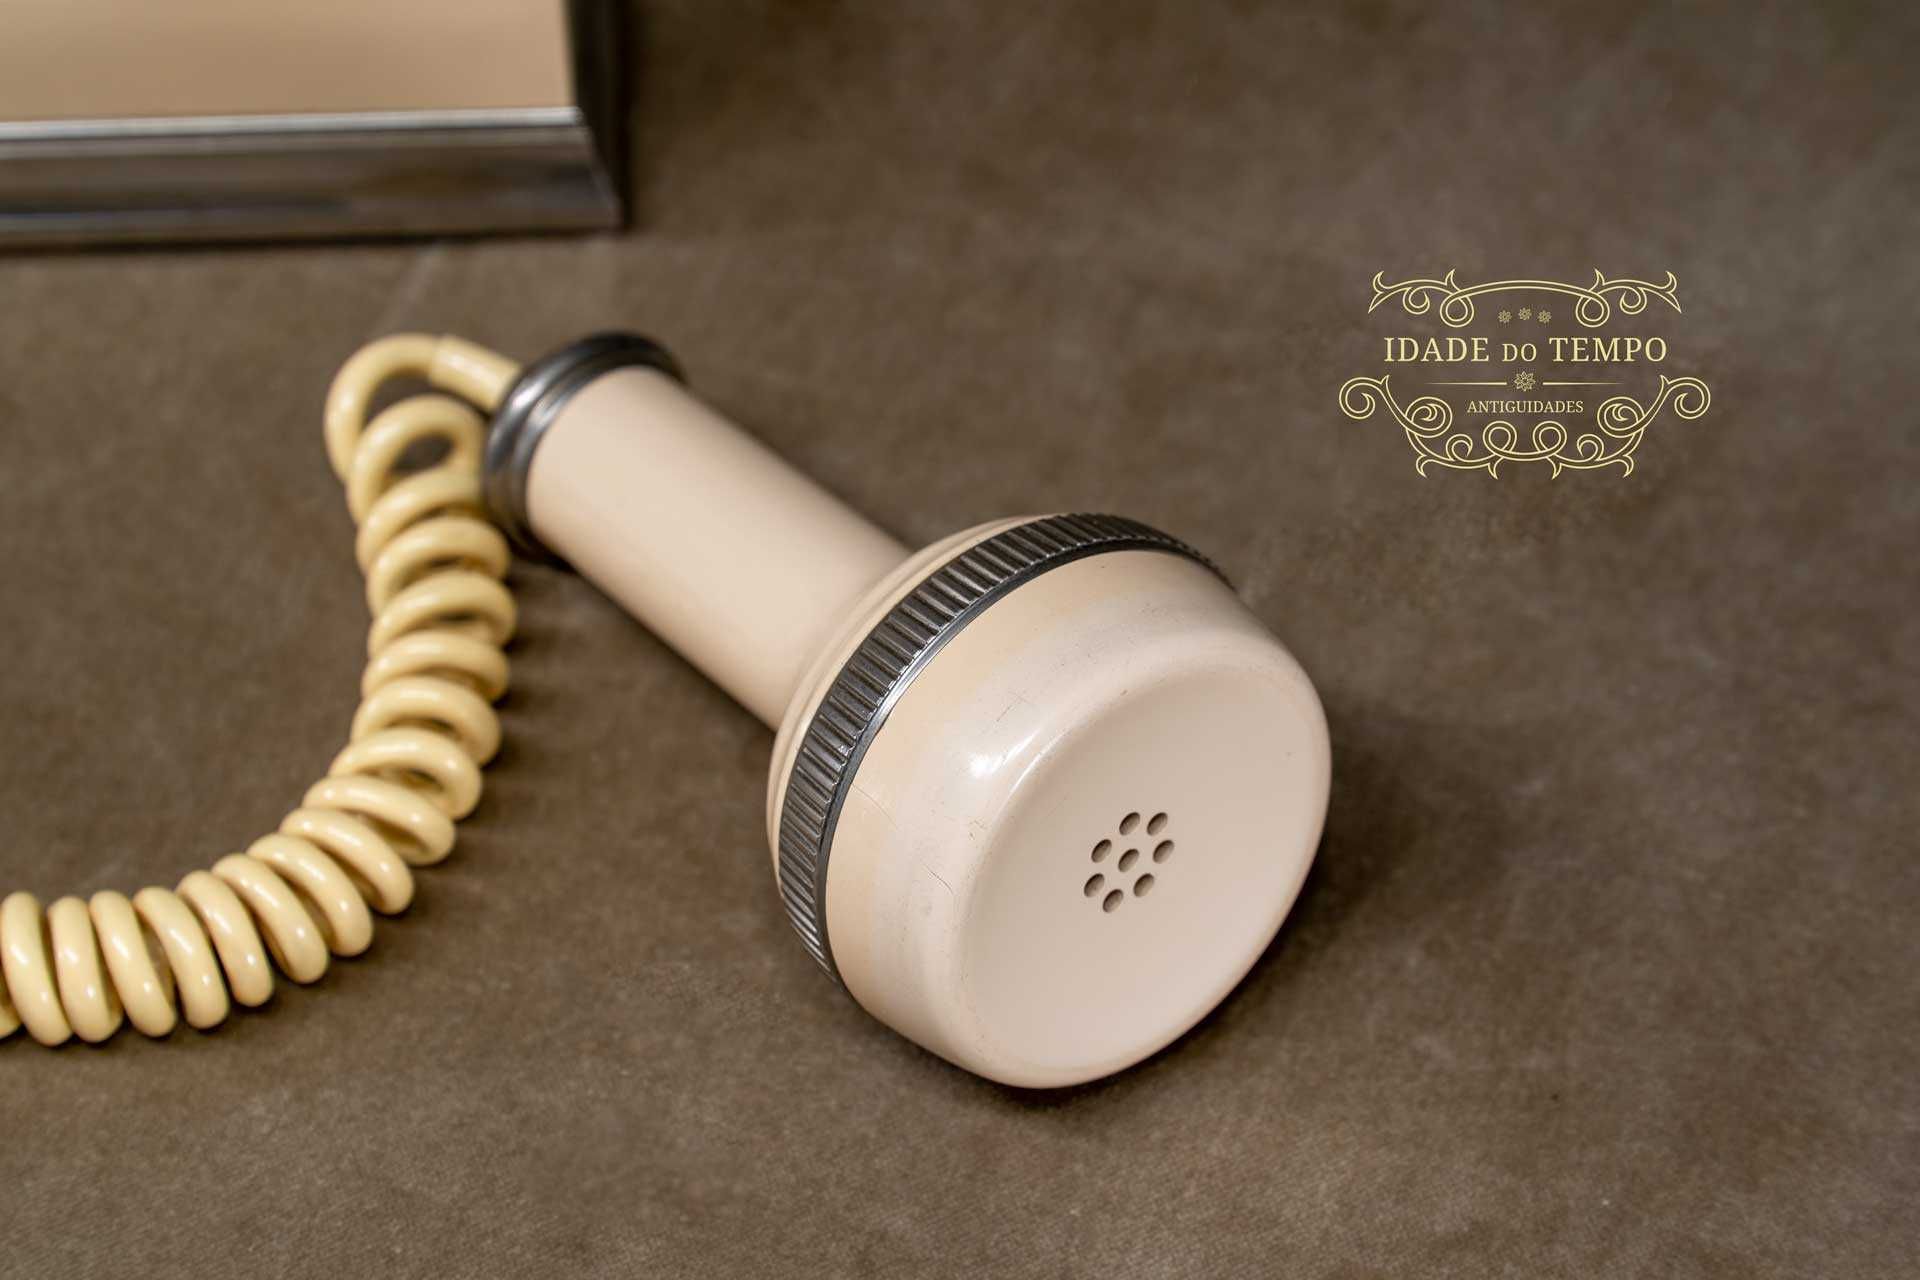 Telefone da década de 1920